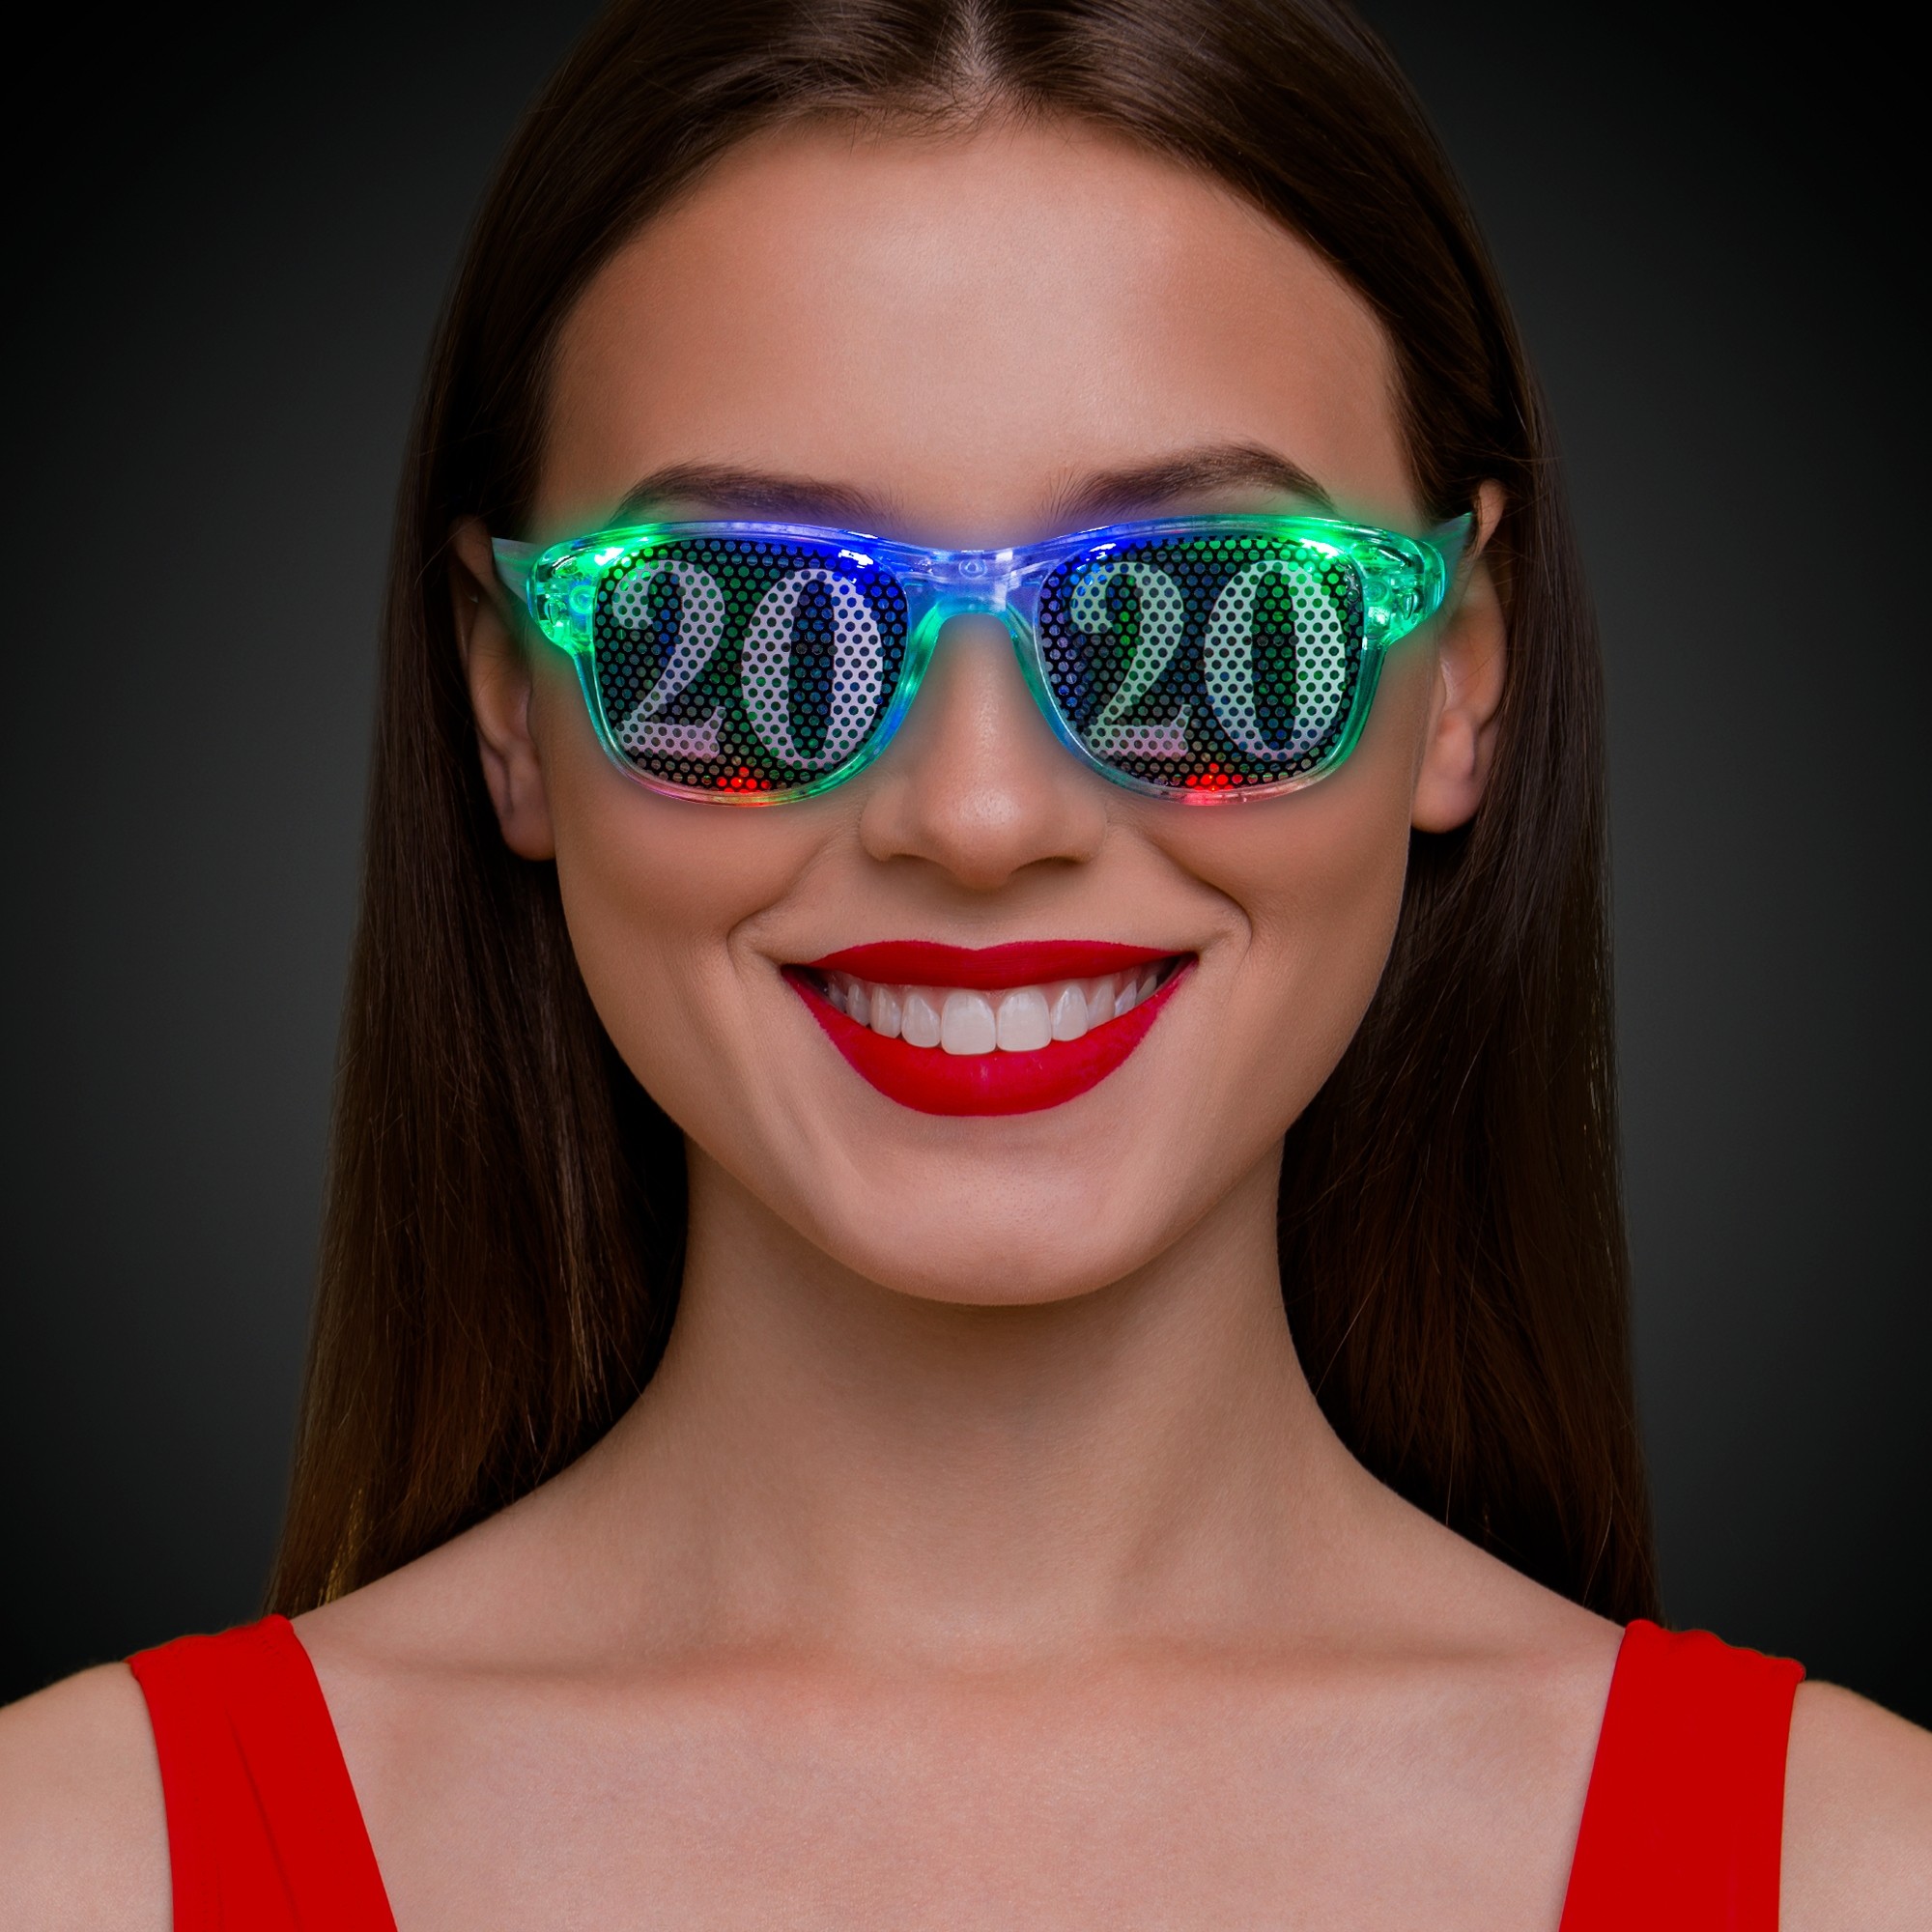 2020 LED Eyeglasses - New Year's Eve - Holidays & Events